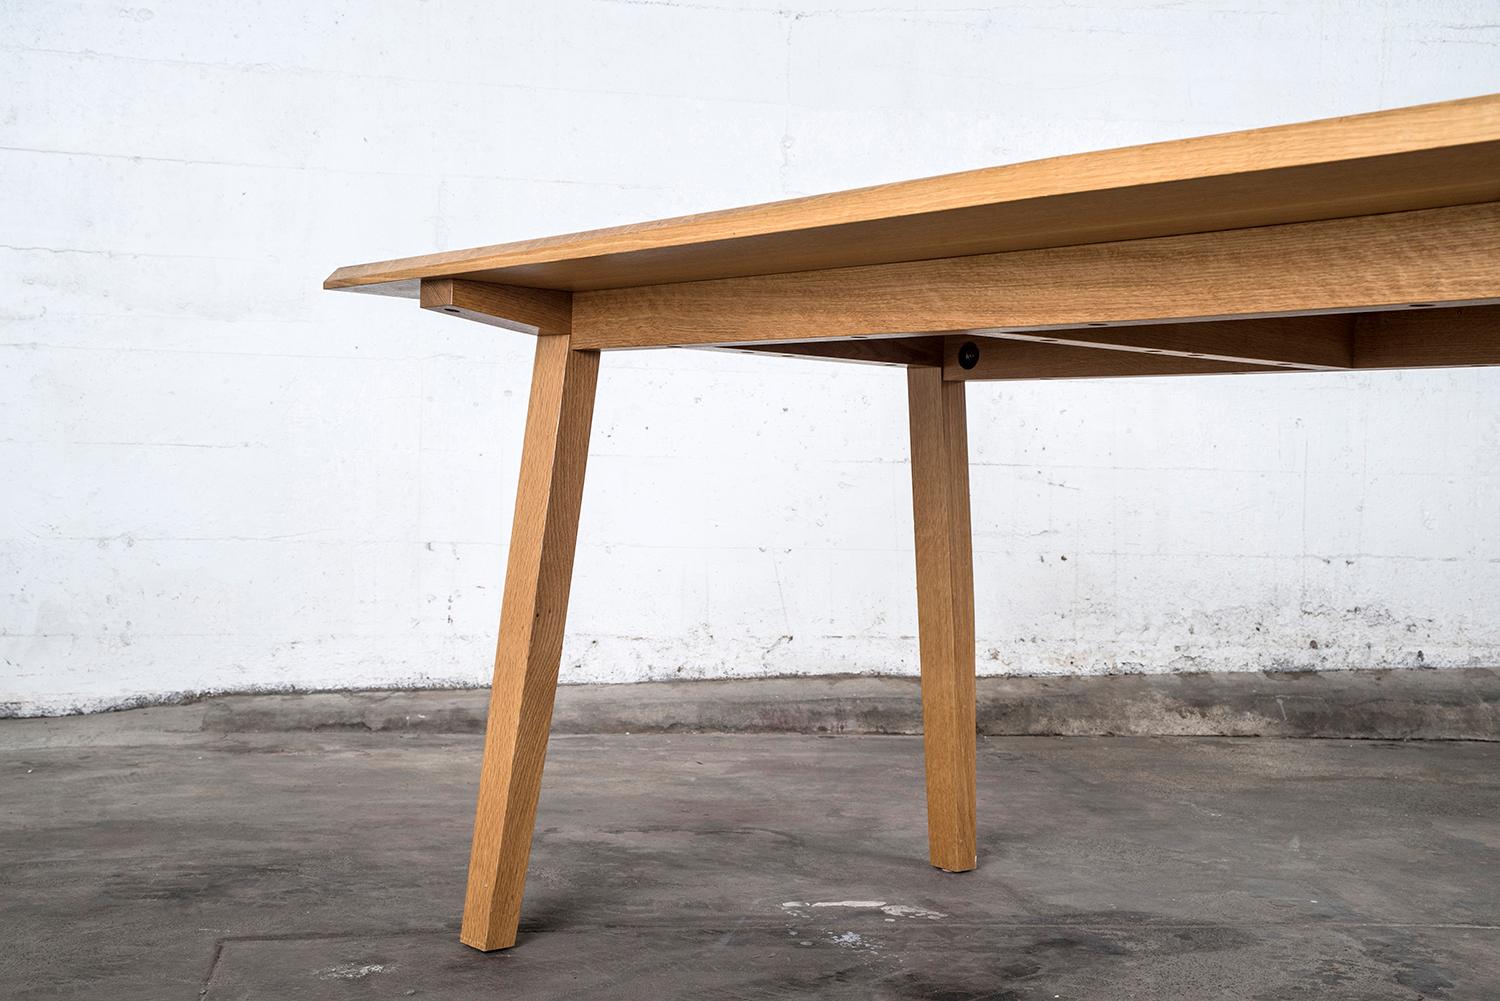 Ein vielseitiger Hartholztisch, der als Kartentisch, Frühstückstisch oder Esstisch in Wohnungsgröße verwendet werden kann. Modernes Styling, handgefertigt aus Hartholz, hier in Nussbaum. Perfekt für das Wohnen in einer Wohnung, vollständig